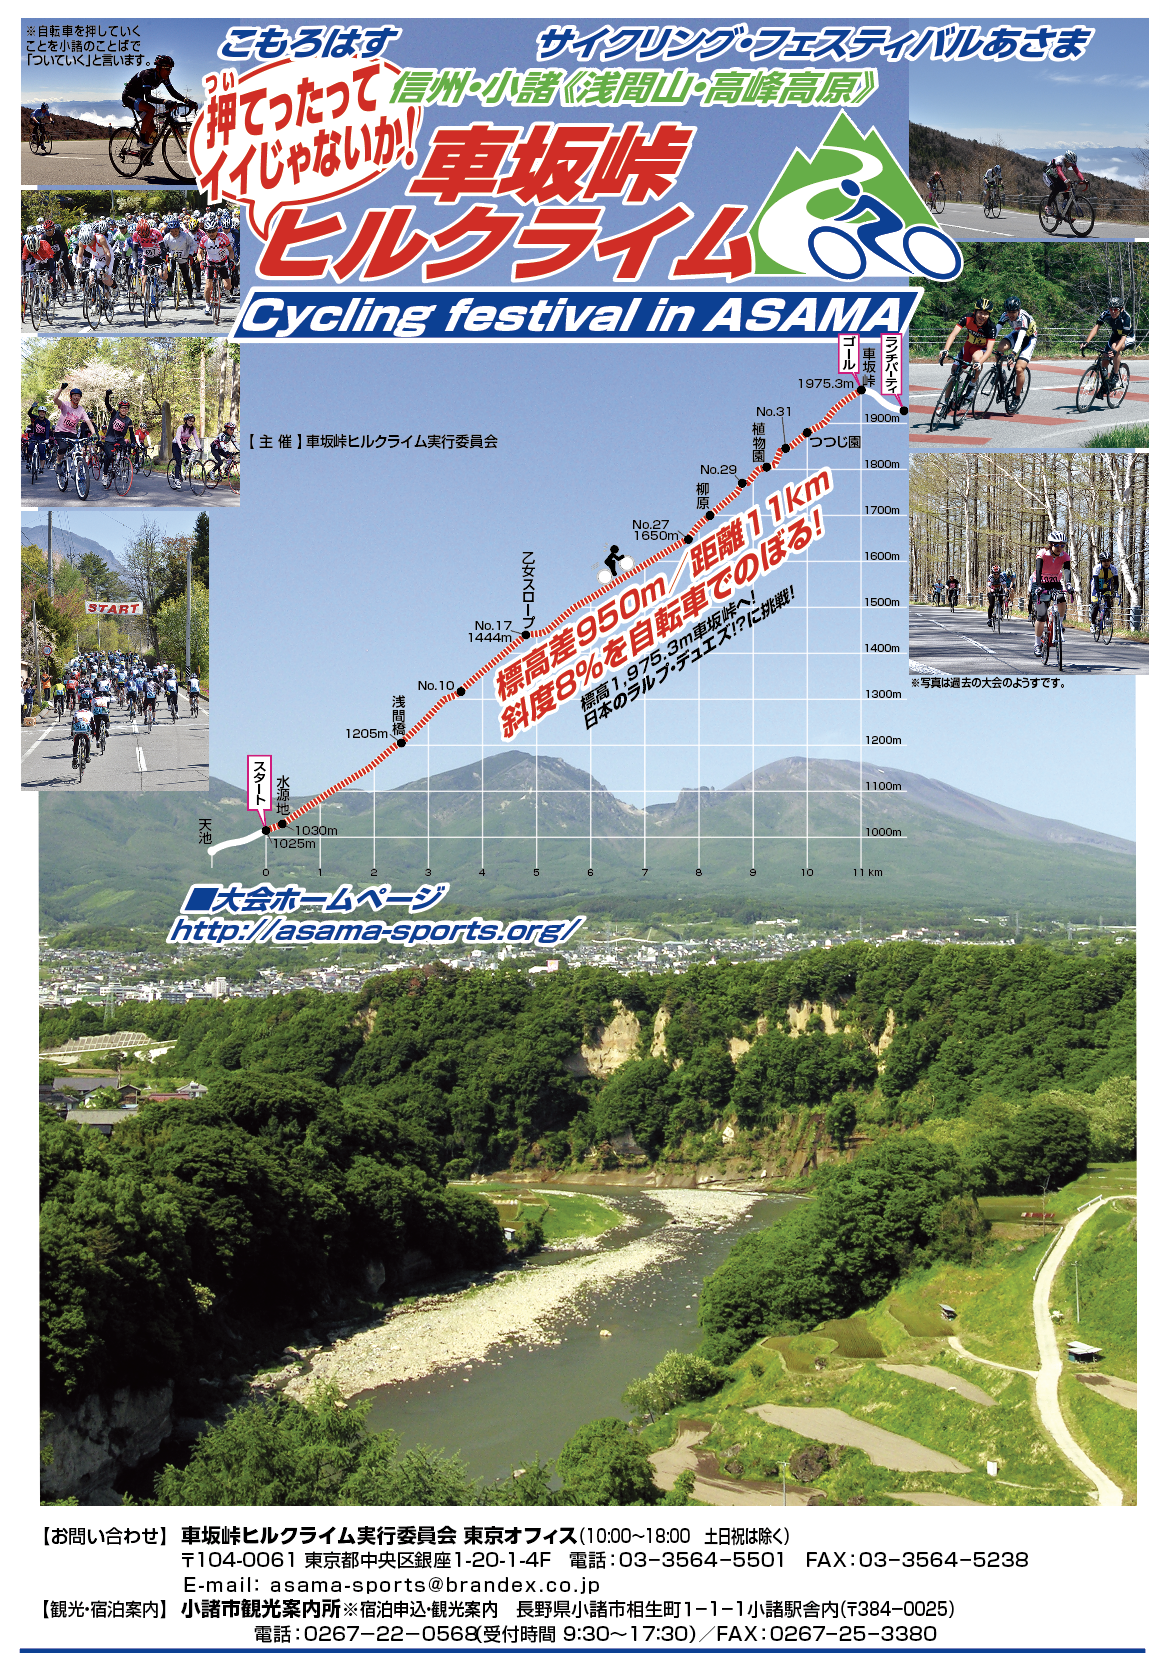 第16回サイクリング・フェスティバルあさま「車坂峠ヒルクライム・2020大会」